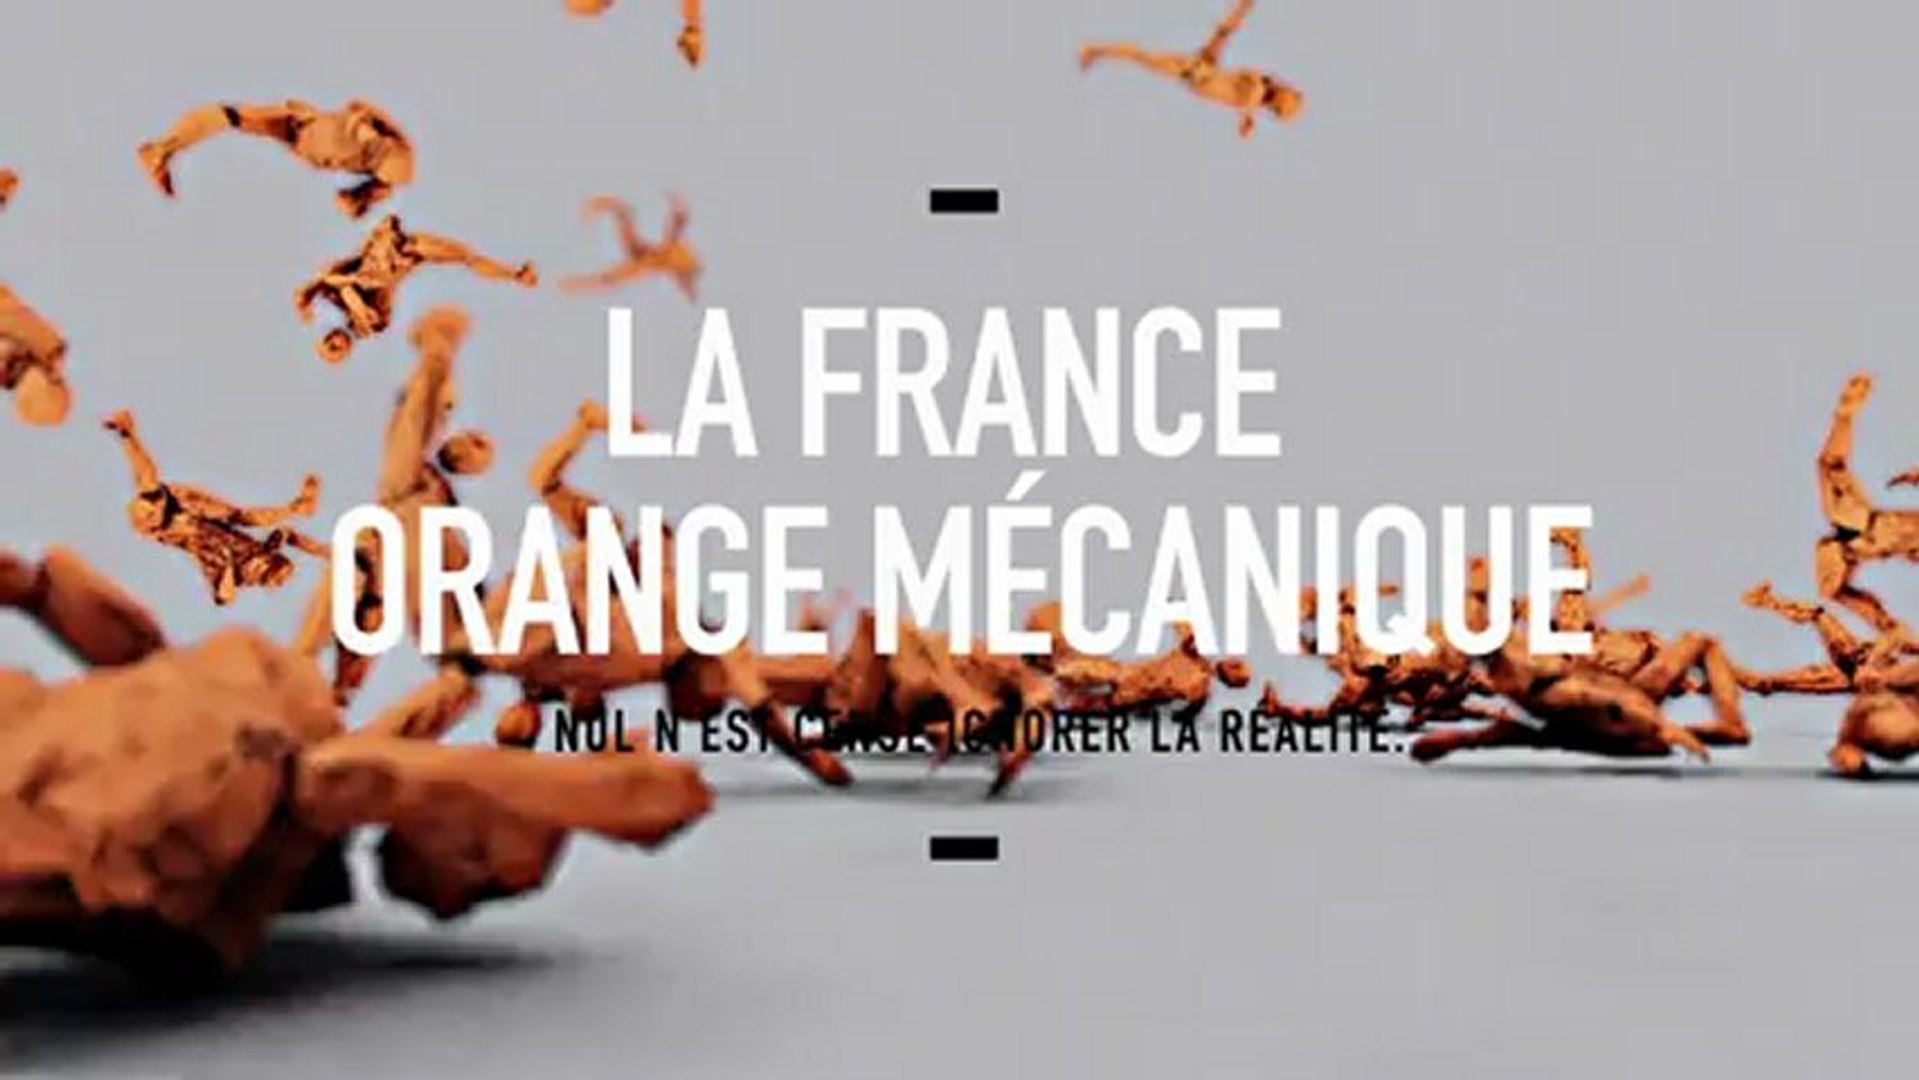 Fdesouche dans La France Orange Mécanique édition augmentée. - Fdesouche